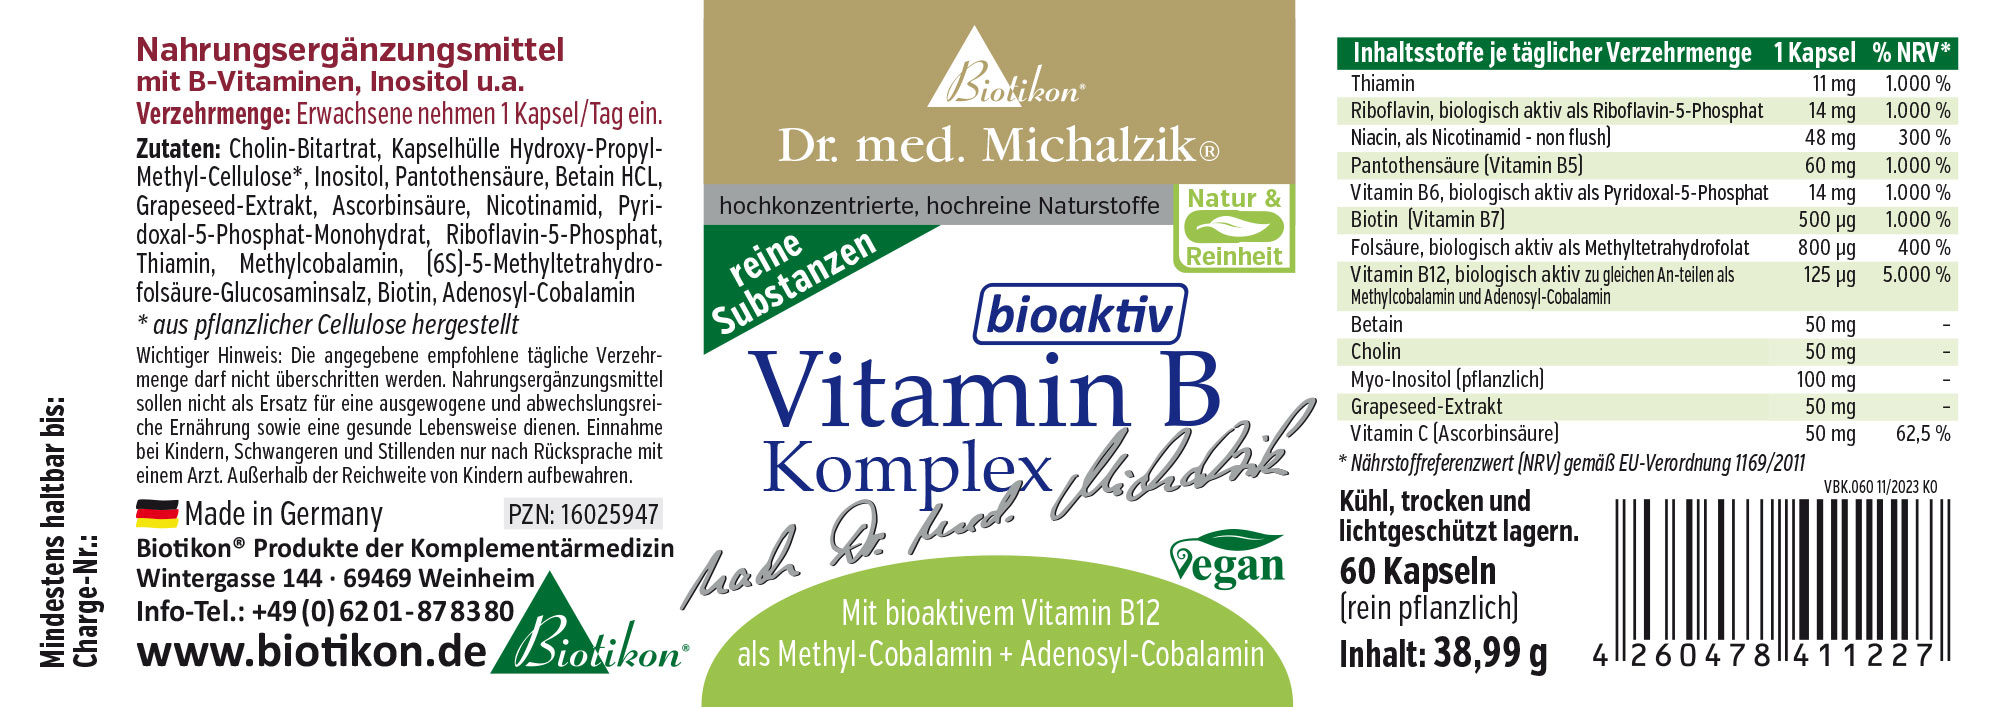 Complexe de vitamines B